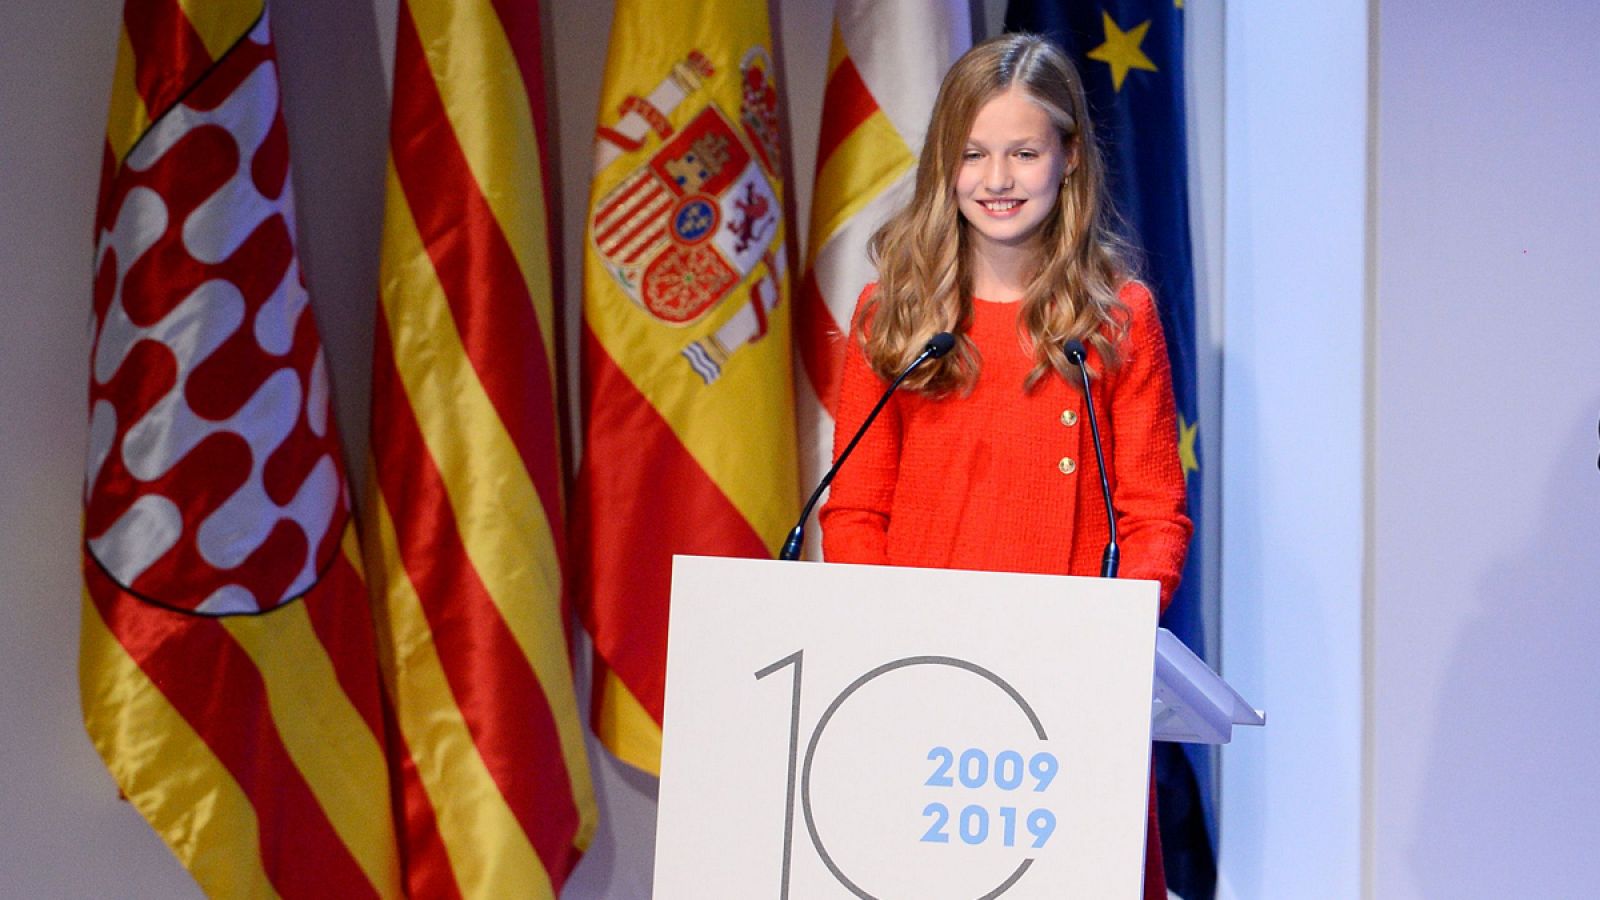 La princesa Leonor en los premios Princesa de Girona 2019: "Cataluña siempre tendrá un lugar especial en mi corazón"